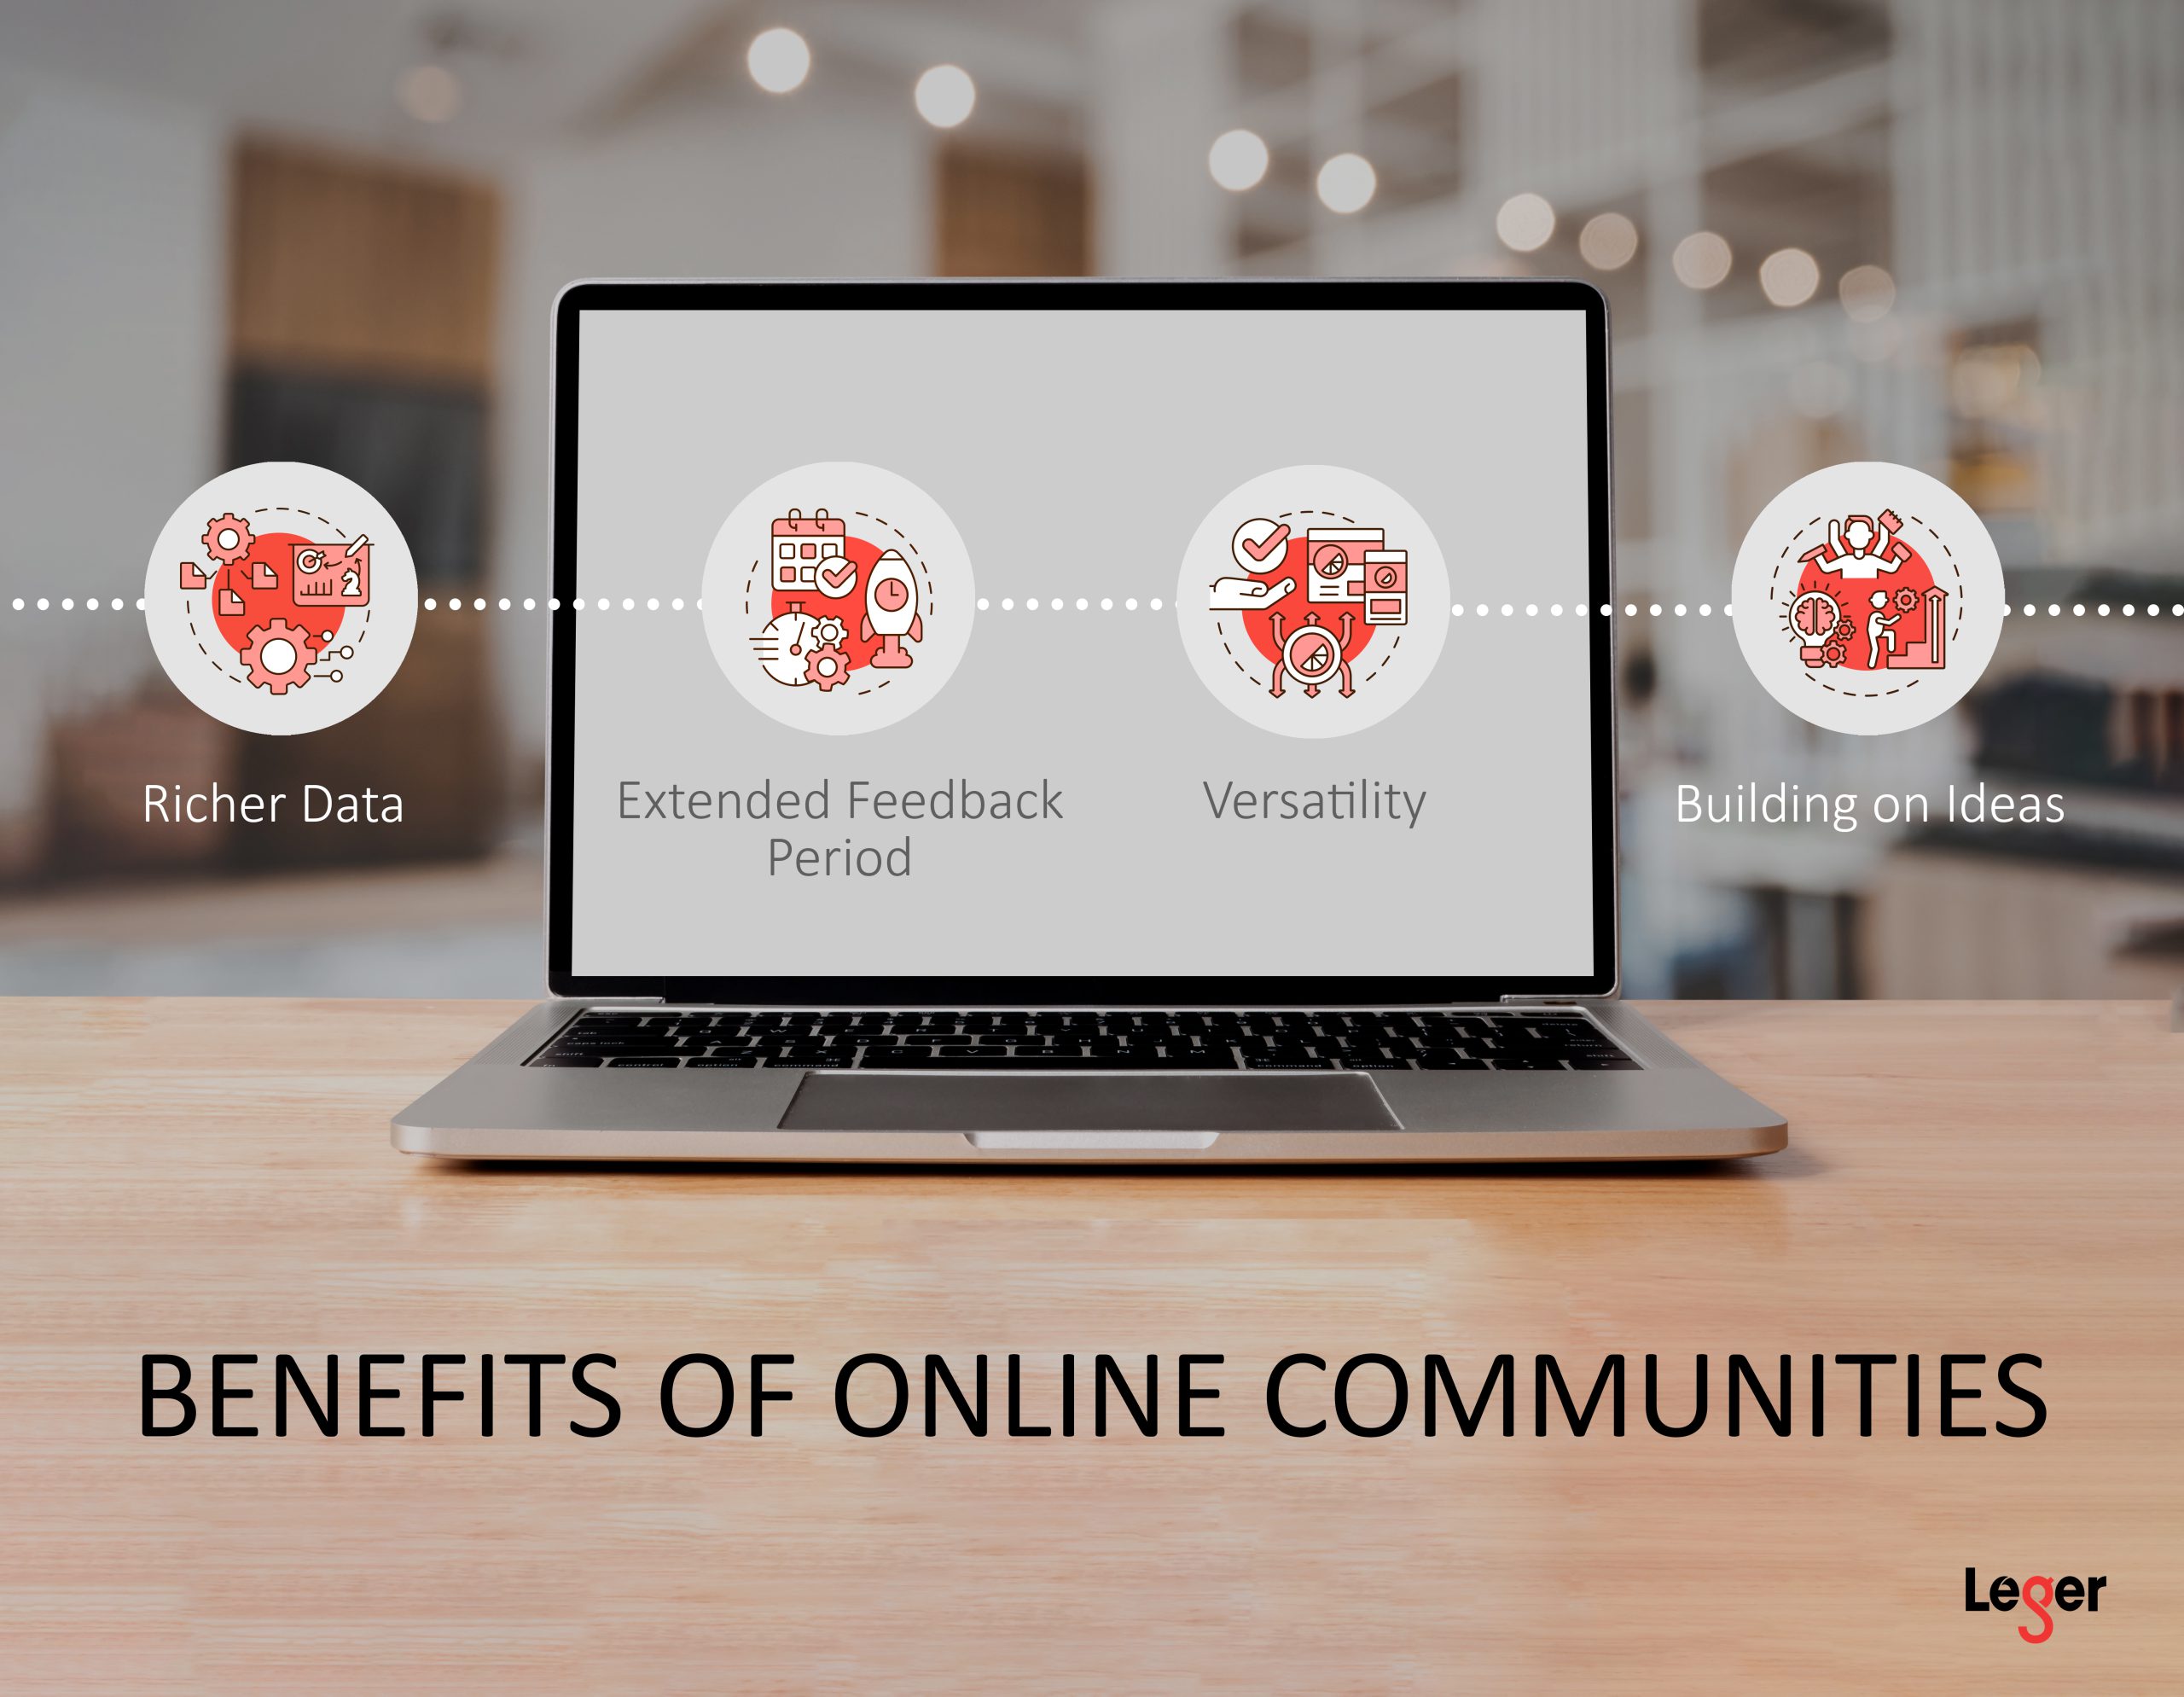 Benefits of online communities